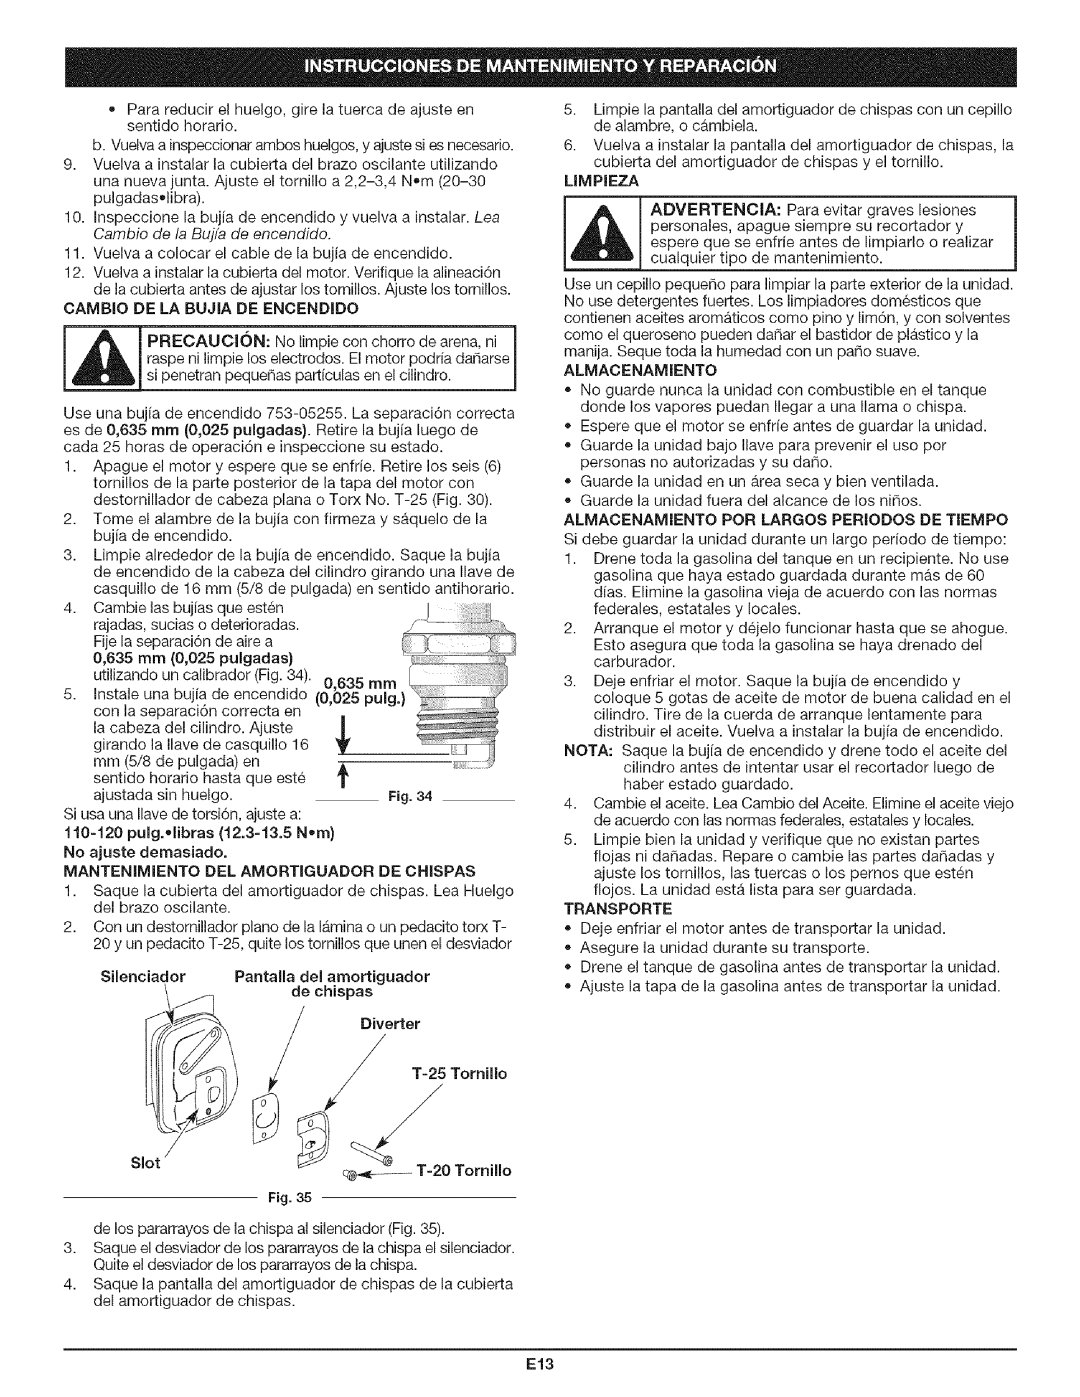 Craftsman 316.79194 manual Silenciador Pantalla del amortiguador de chispas, Diverter JT-25 Tomilio, Limpieza 